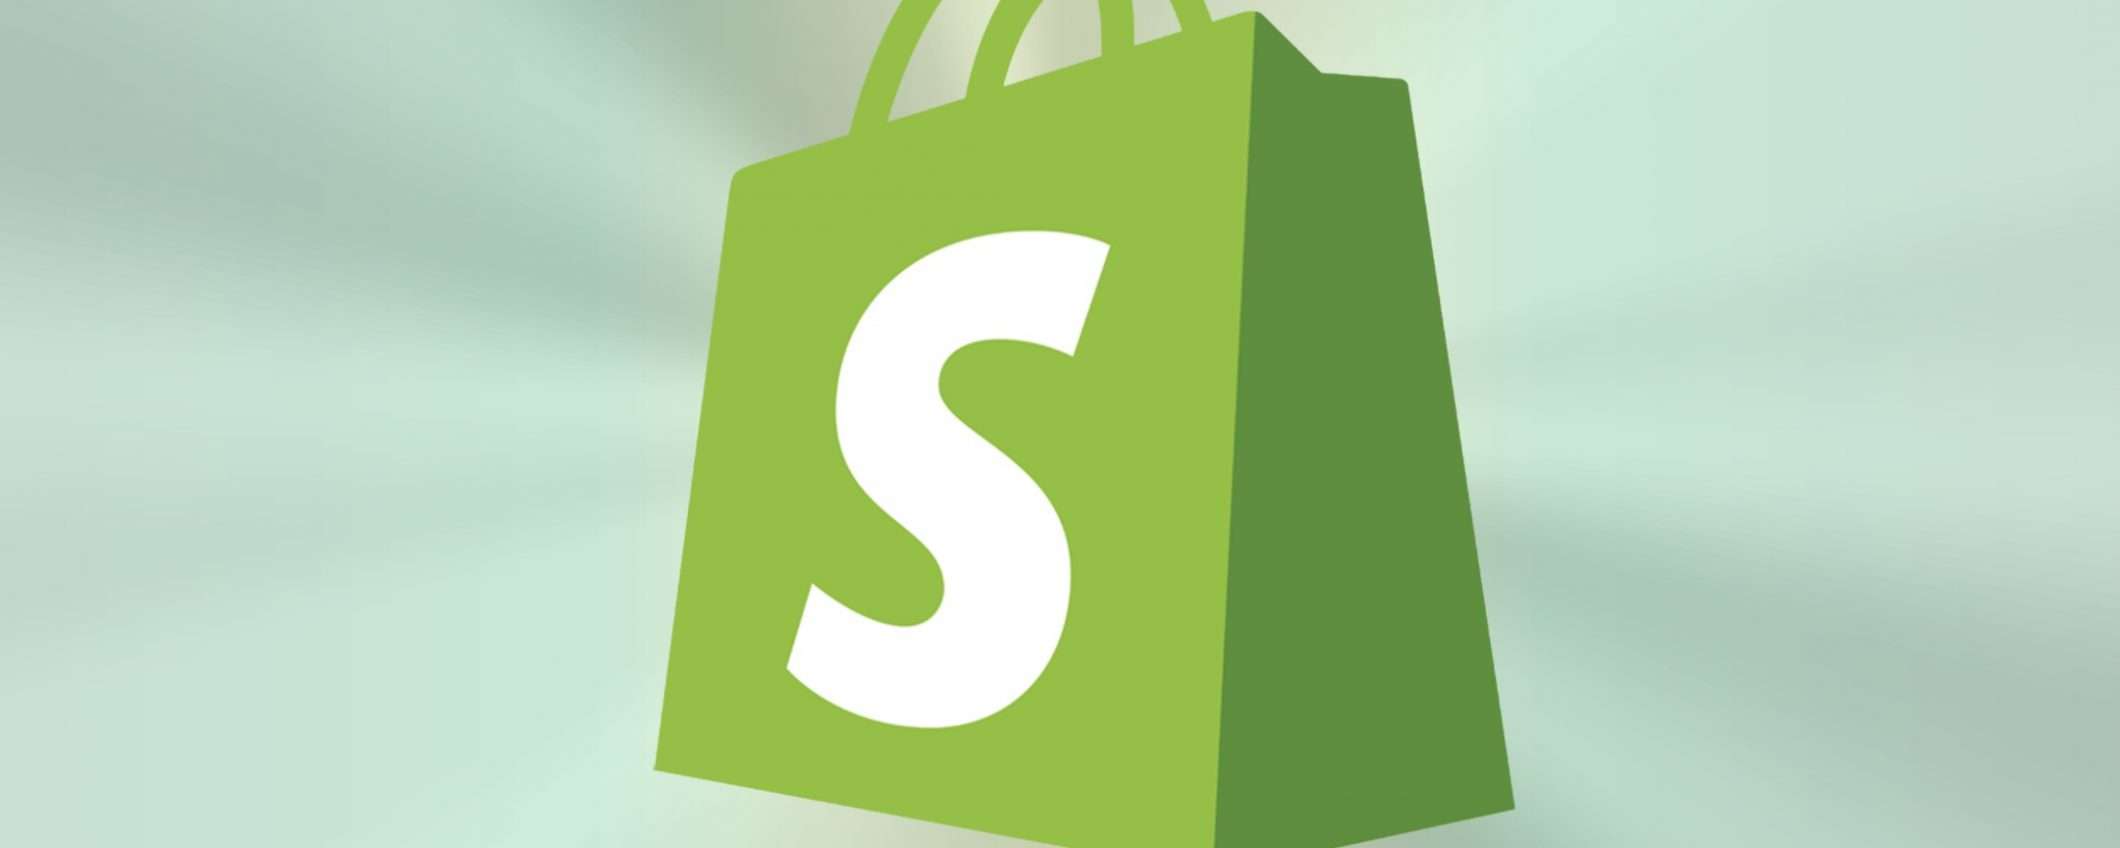 La corsa all'e-commerce, il successo di Shopify